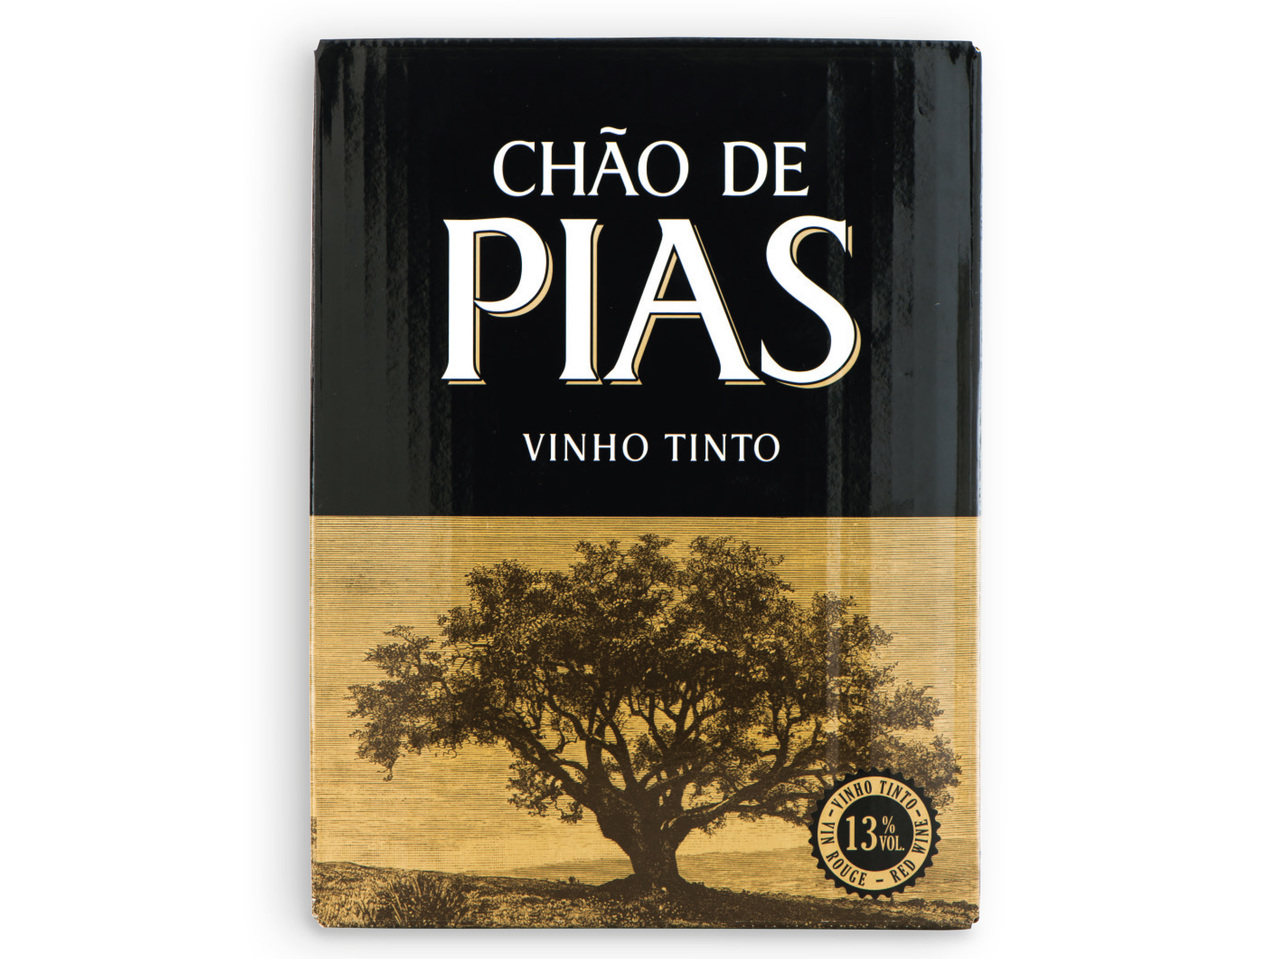 CHÃO DE PIAS(R) Vinho Tinto BIB